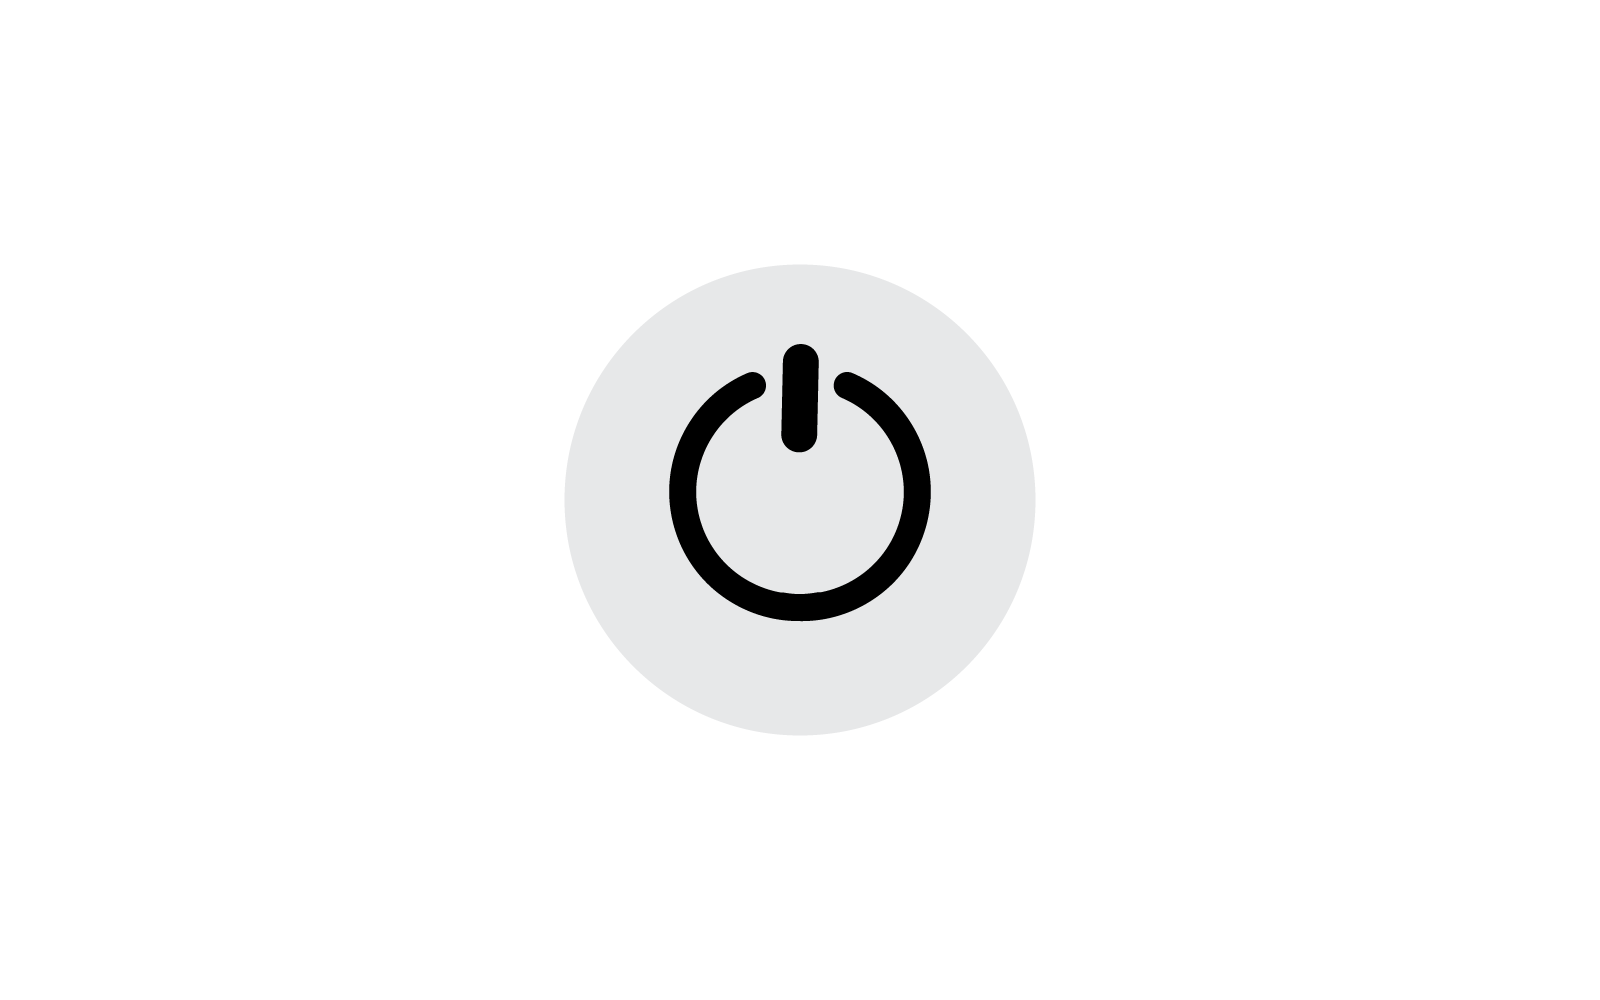 Power button icon vector design template